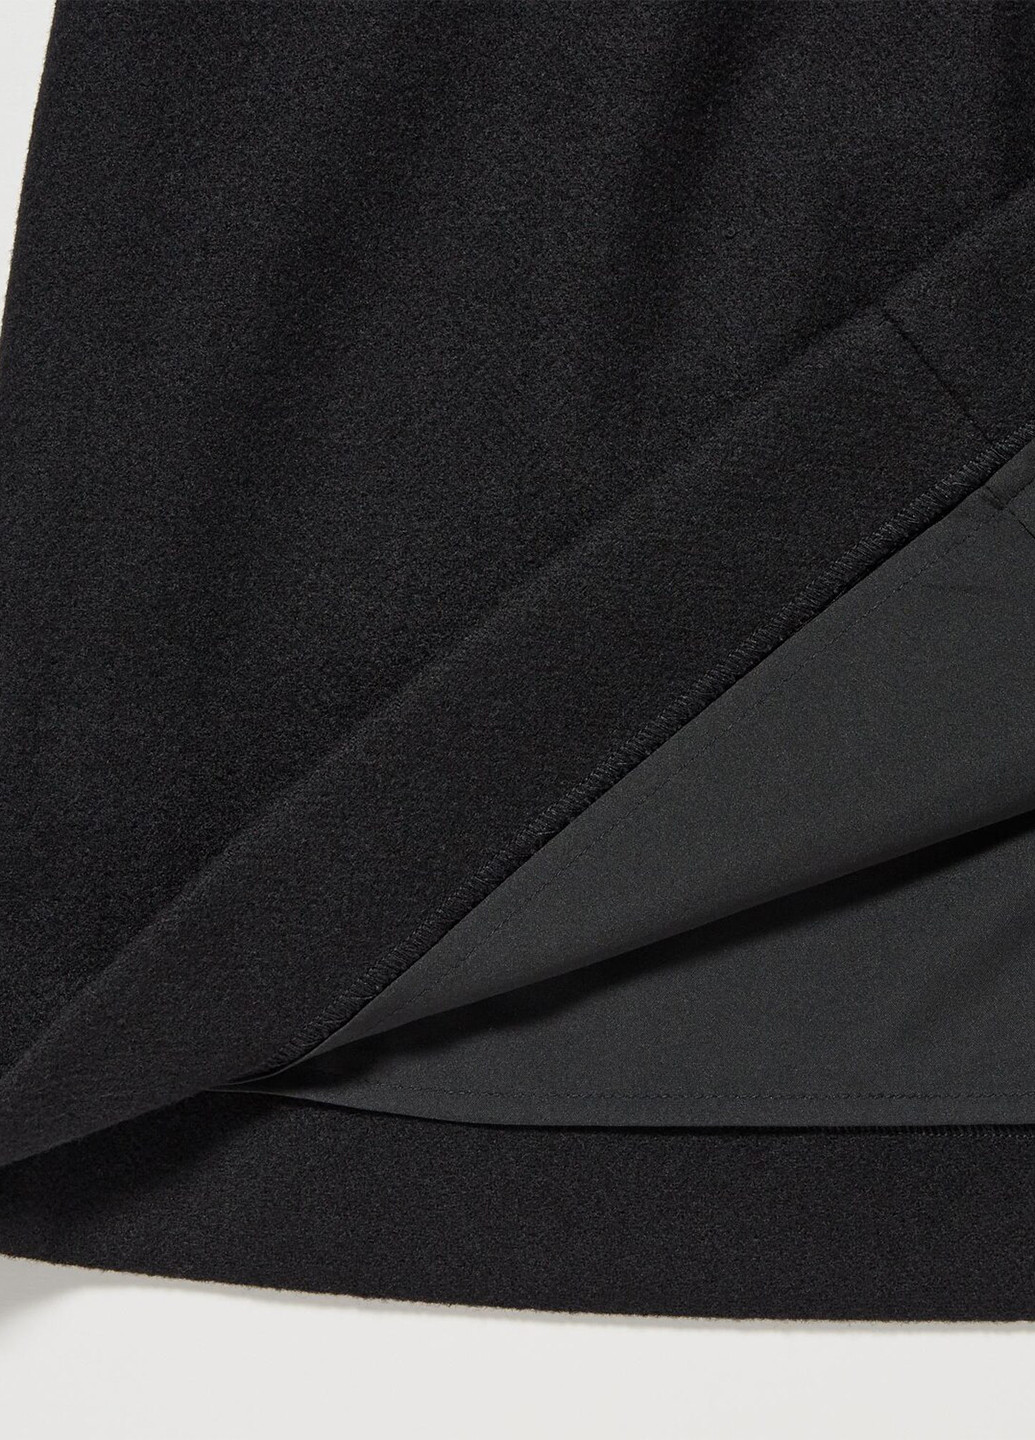 Черная кэжуал однотонная юбка Uniqlo а-силуэта (трапеция)